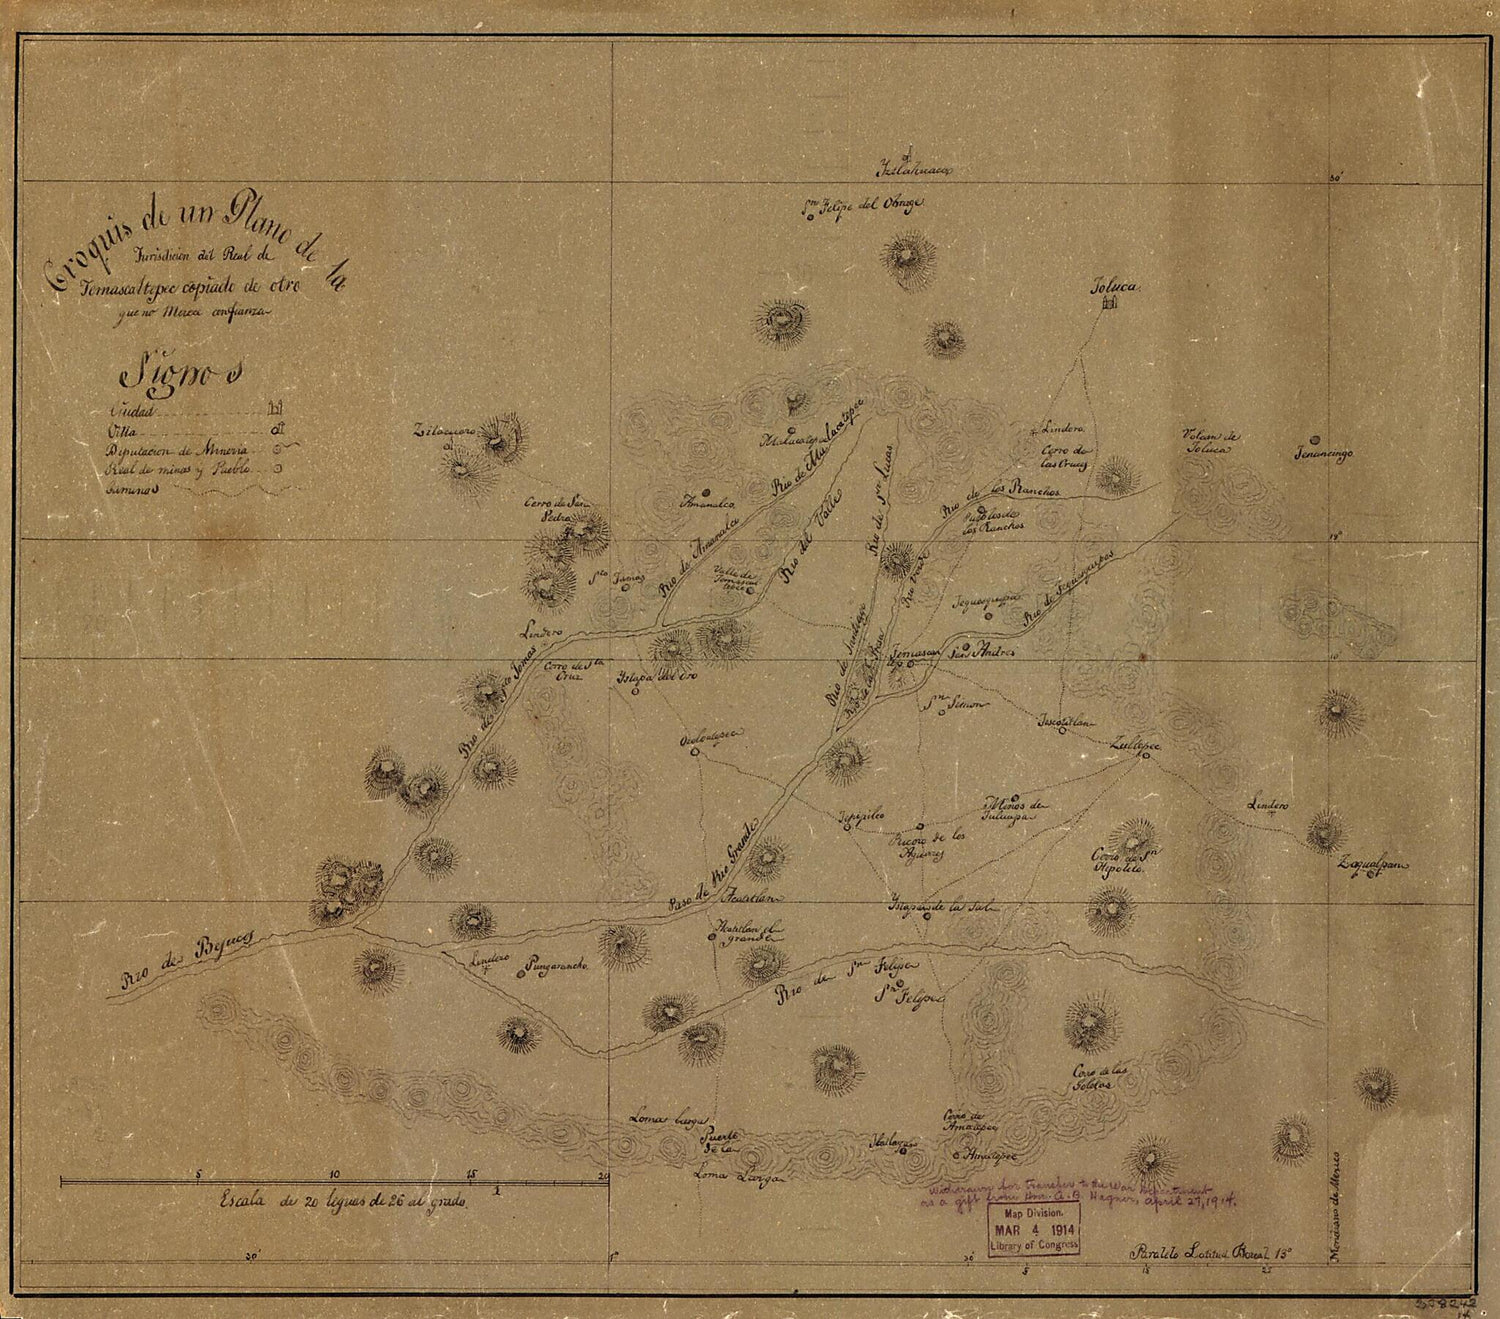 This old map of Croquis De Un Plano De La Jurisdicion Del Real De Temascaltepec from 1840 was created by  in 1840